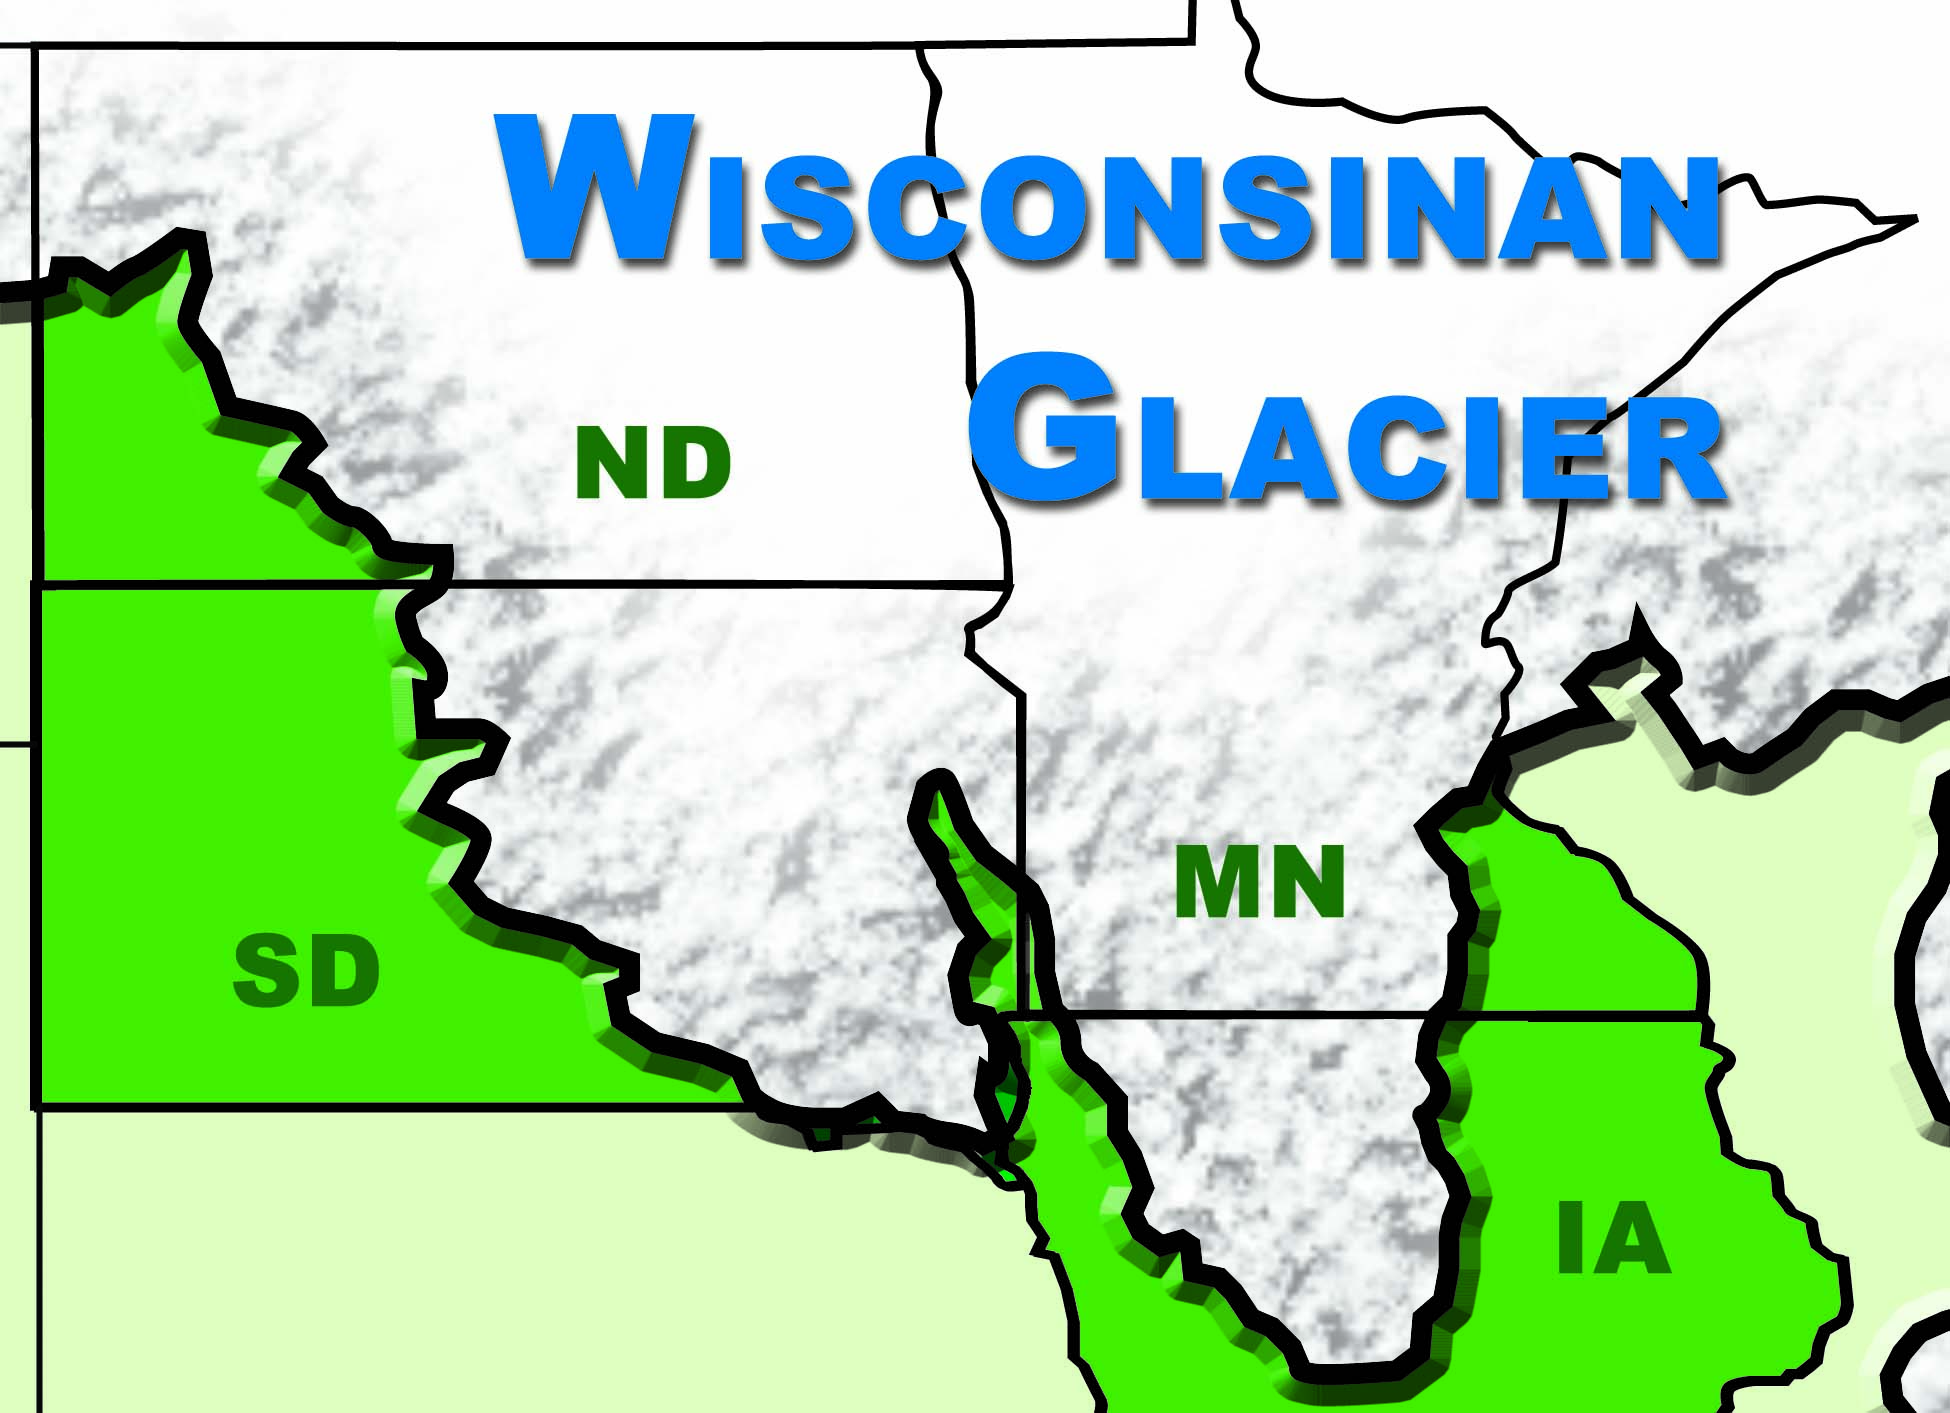 Wisconsinan Glacier